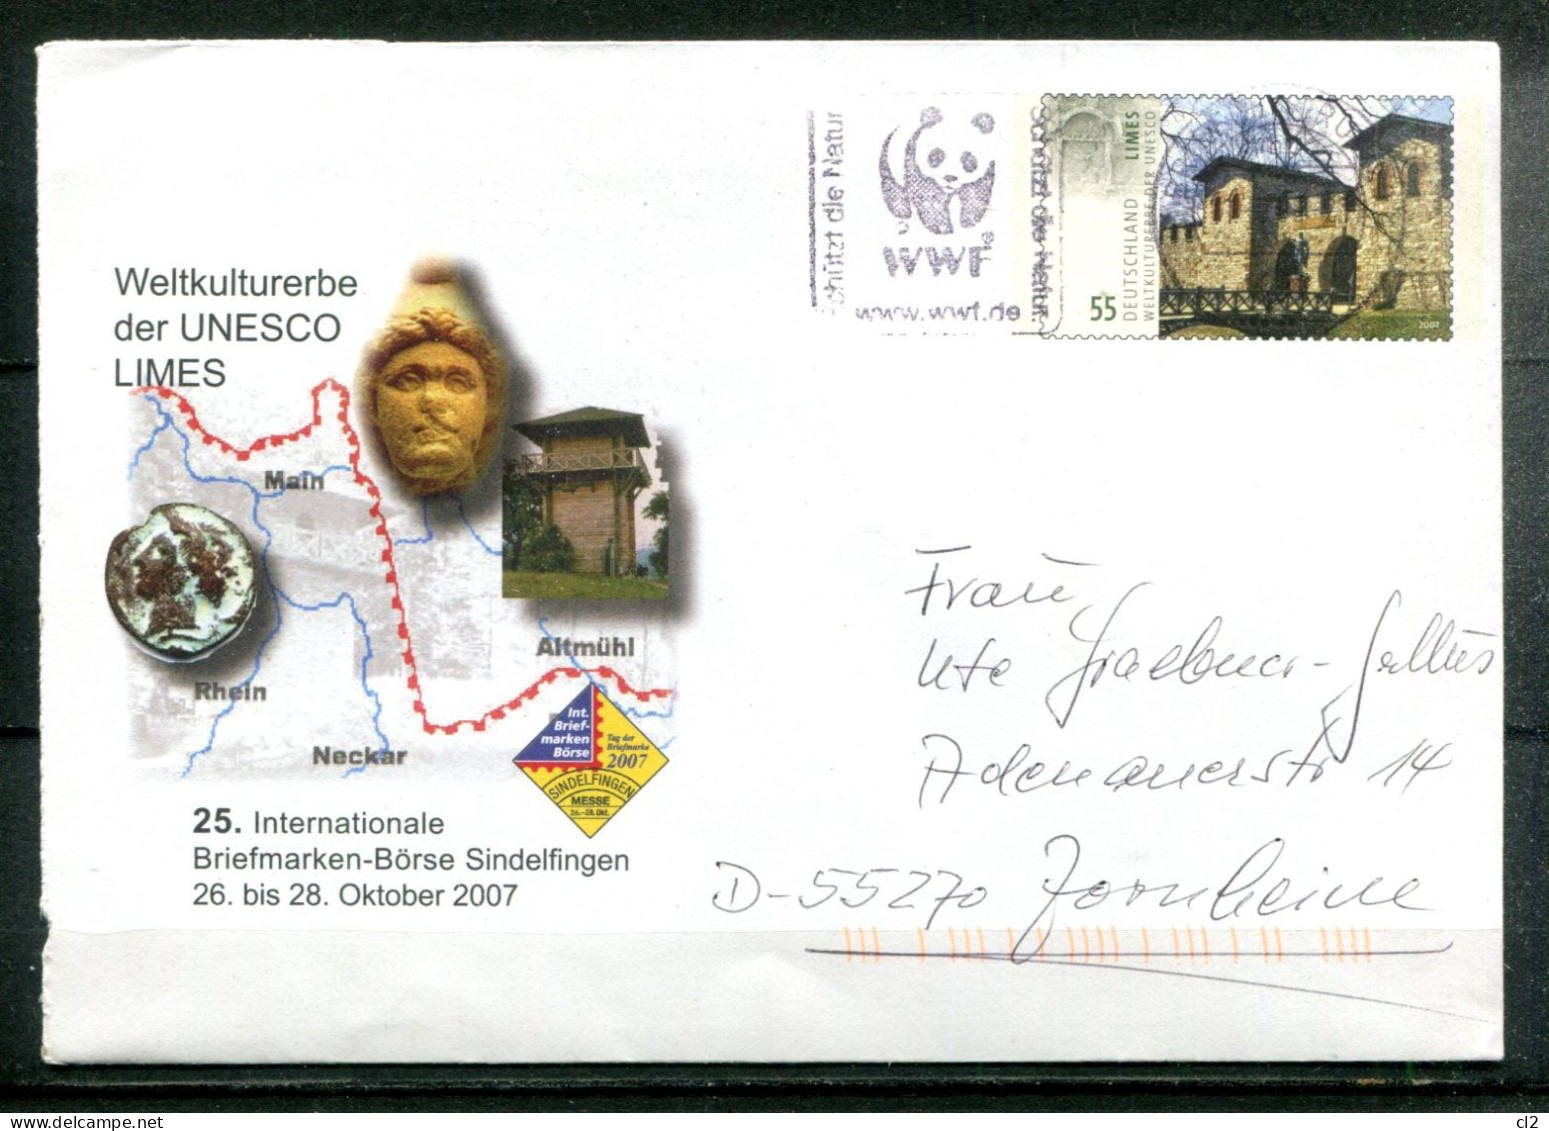 REPUBLIQUE FEDERALE ALLEMANDE -Ganzsache(Entier Postal) - Mi USo 141 (17. Internationale Briefmarken-Börse Sindelfingen) - Umschläge - Gebraucht